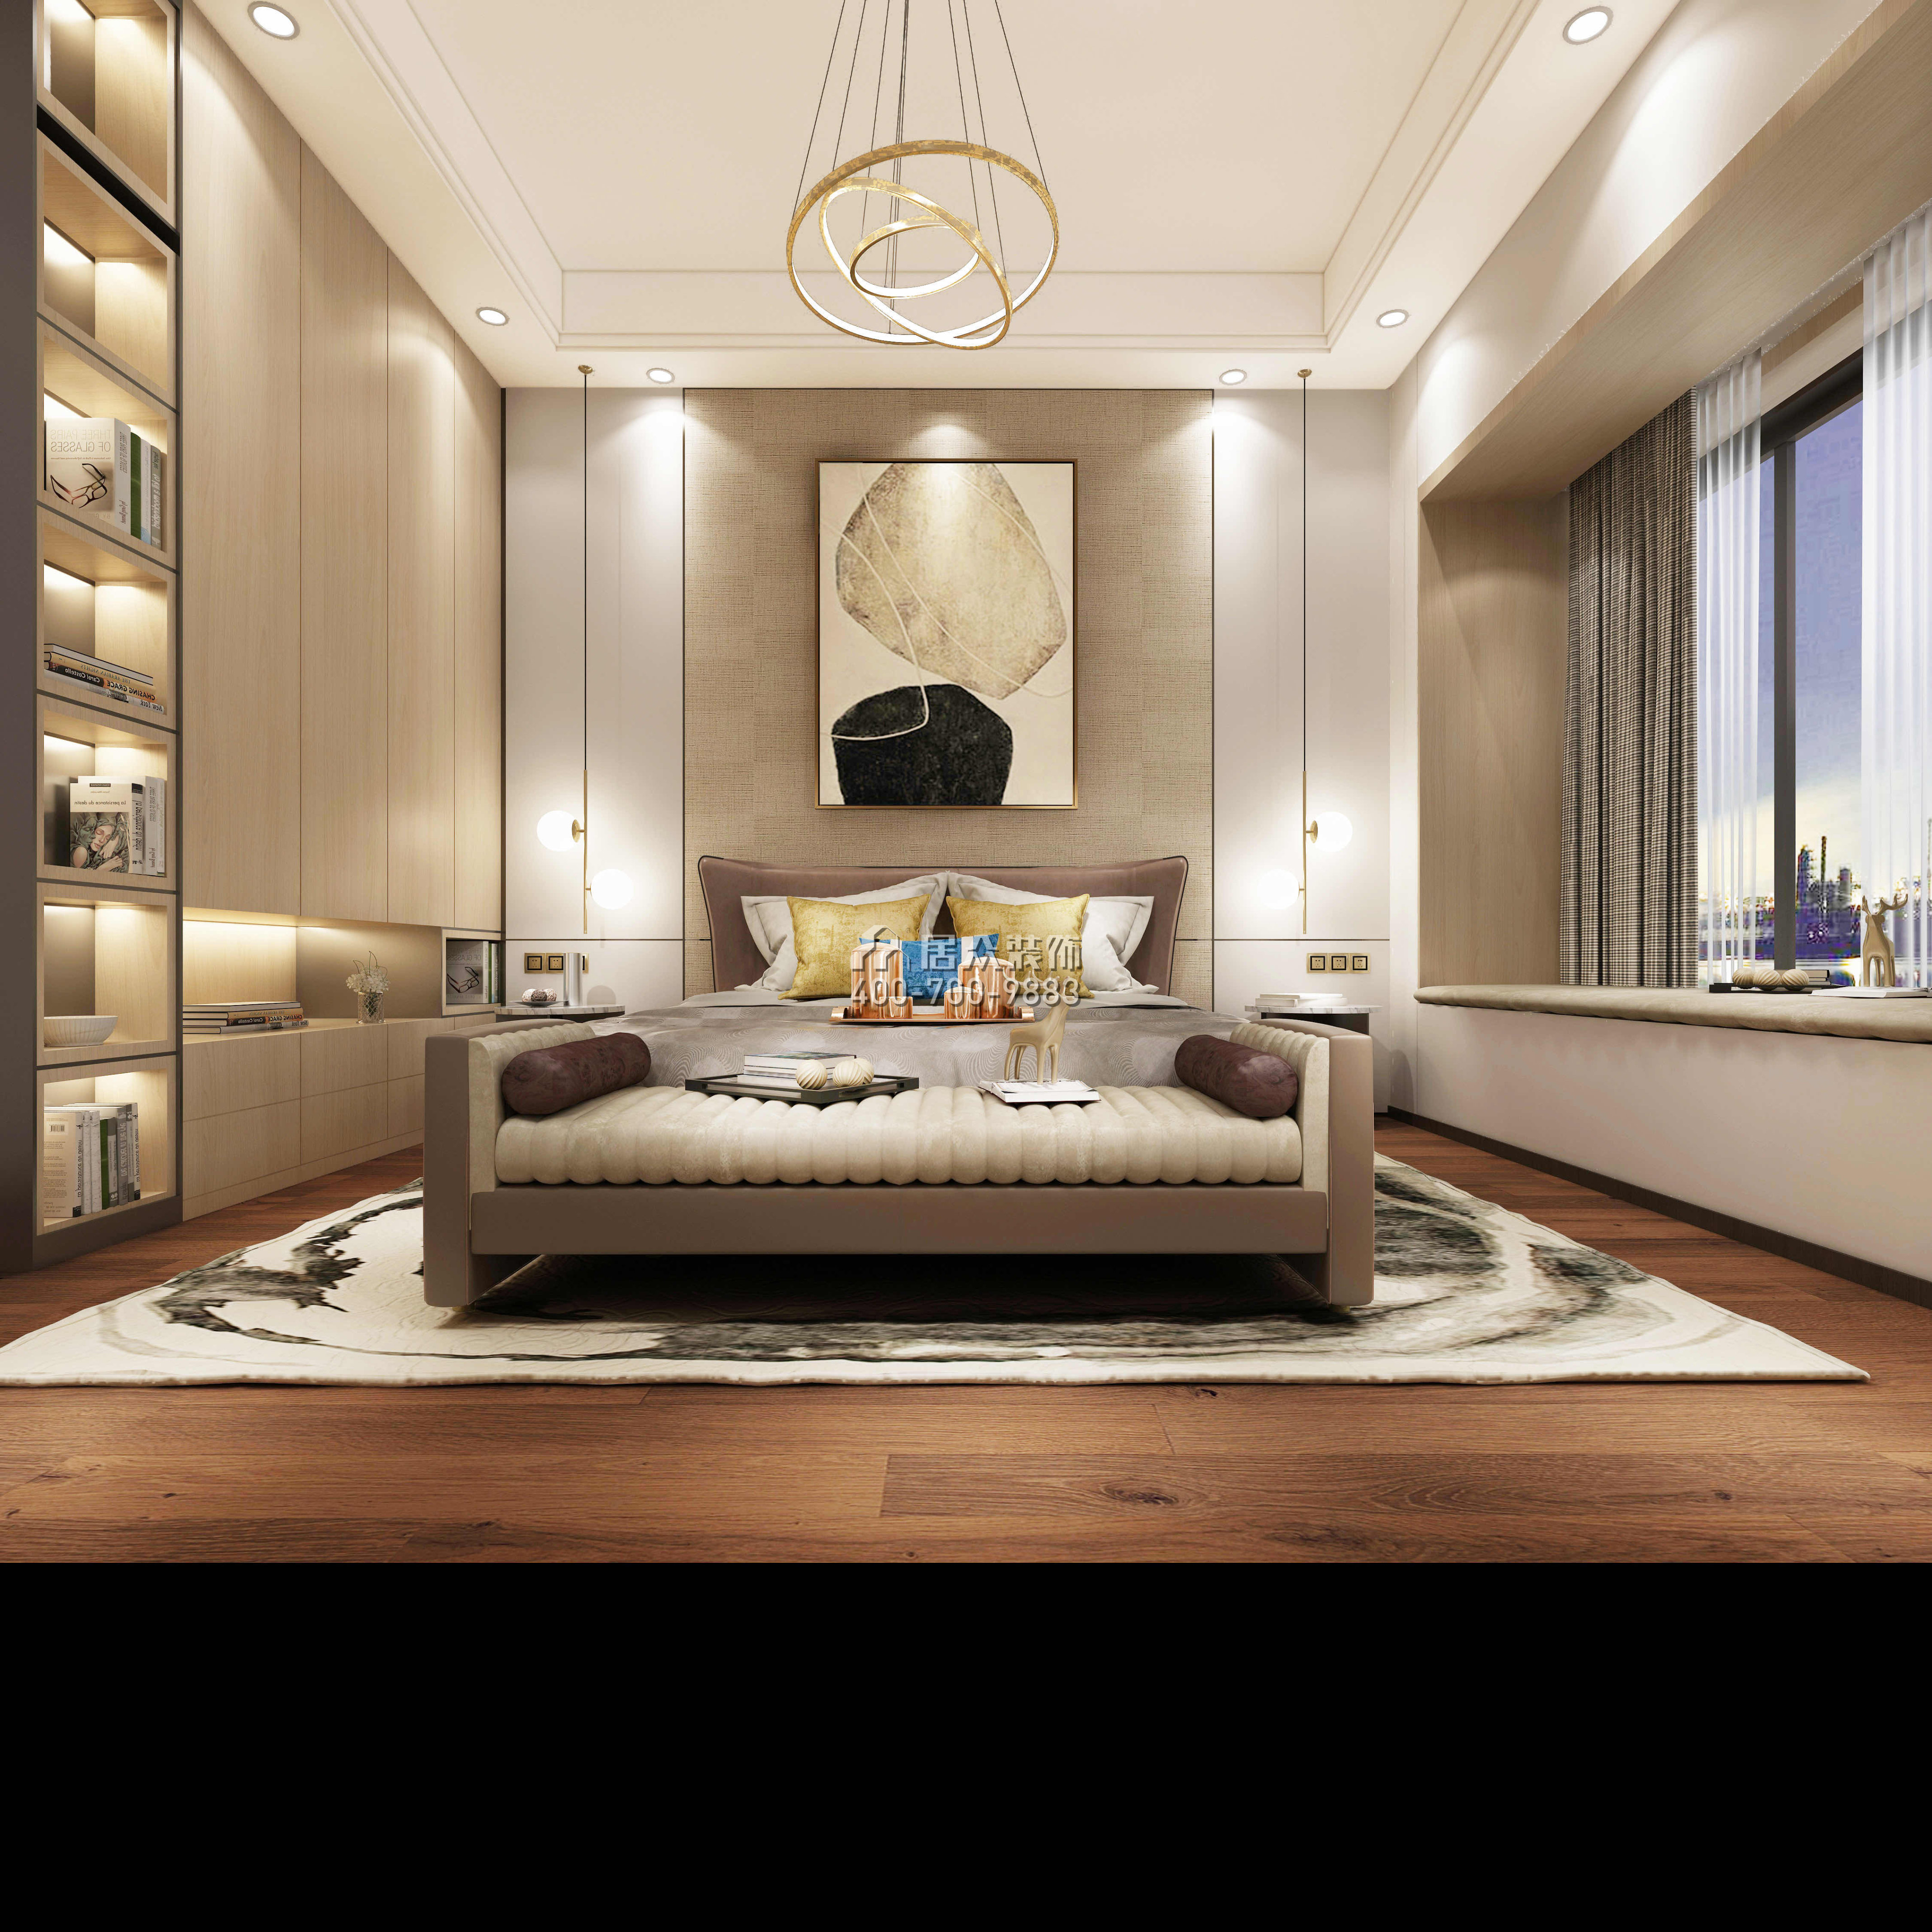 中海银海湾500平方米现代简约风格复式户型卧室装修效果图